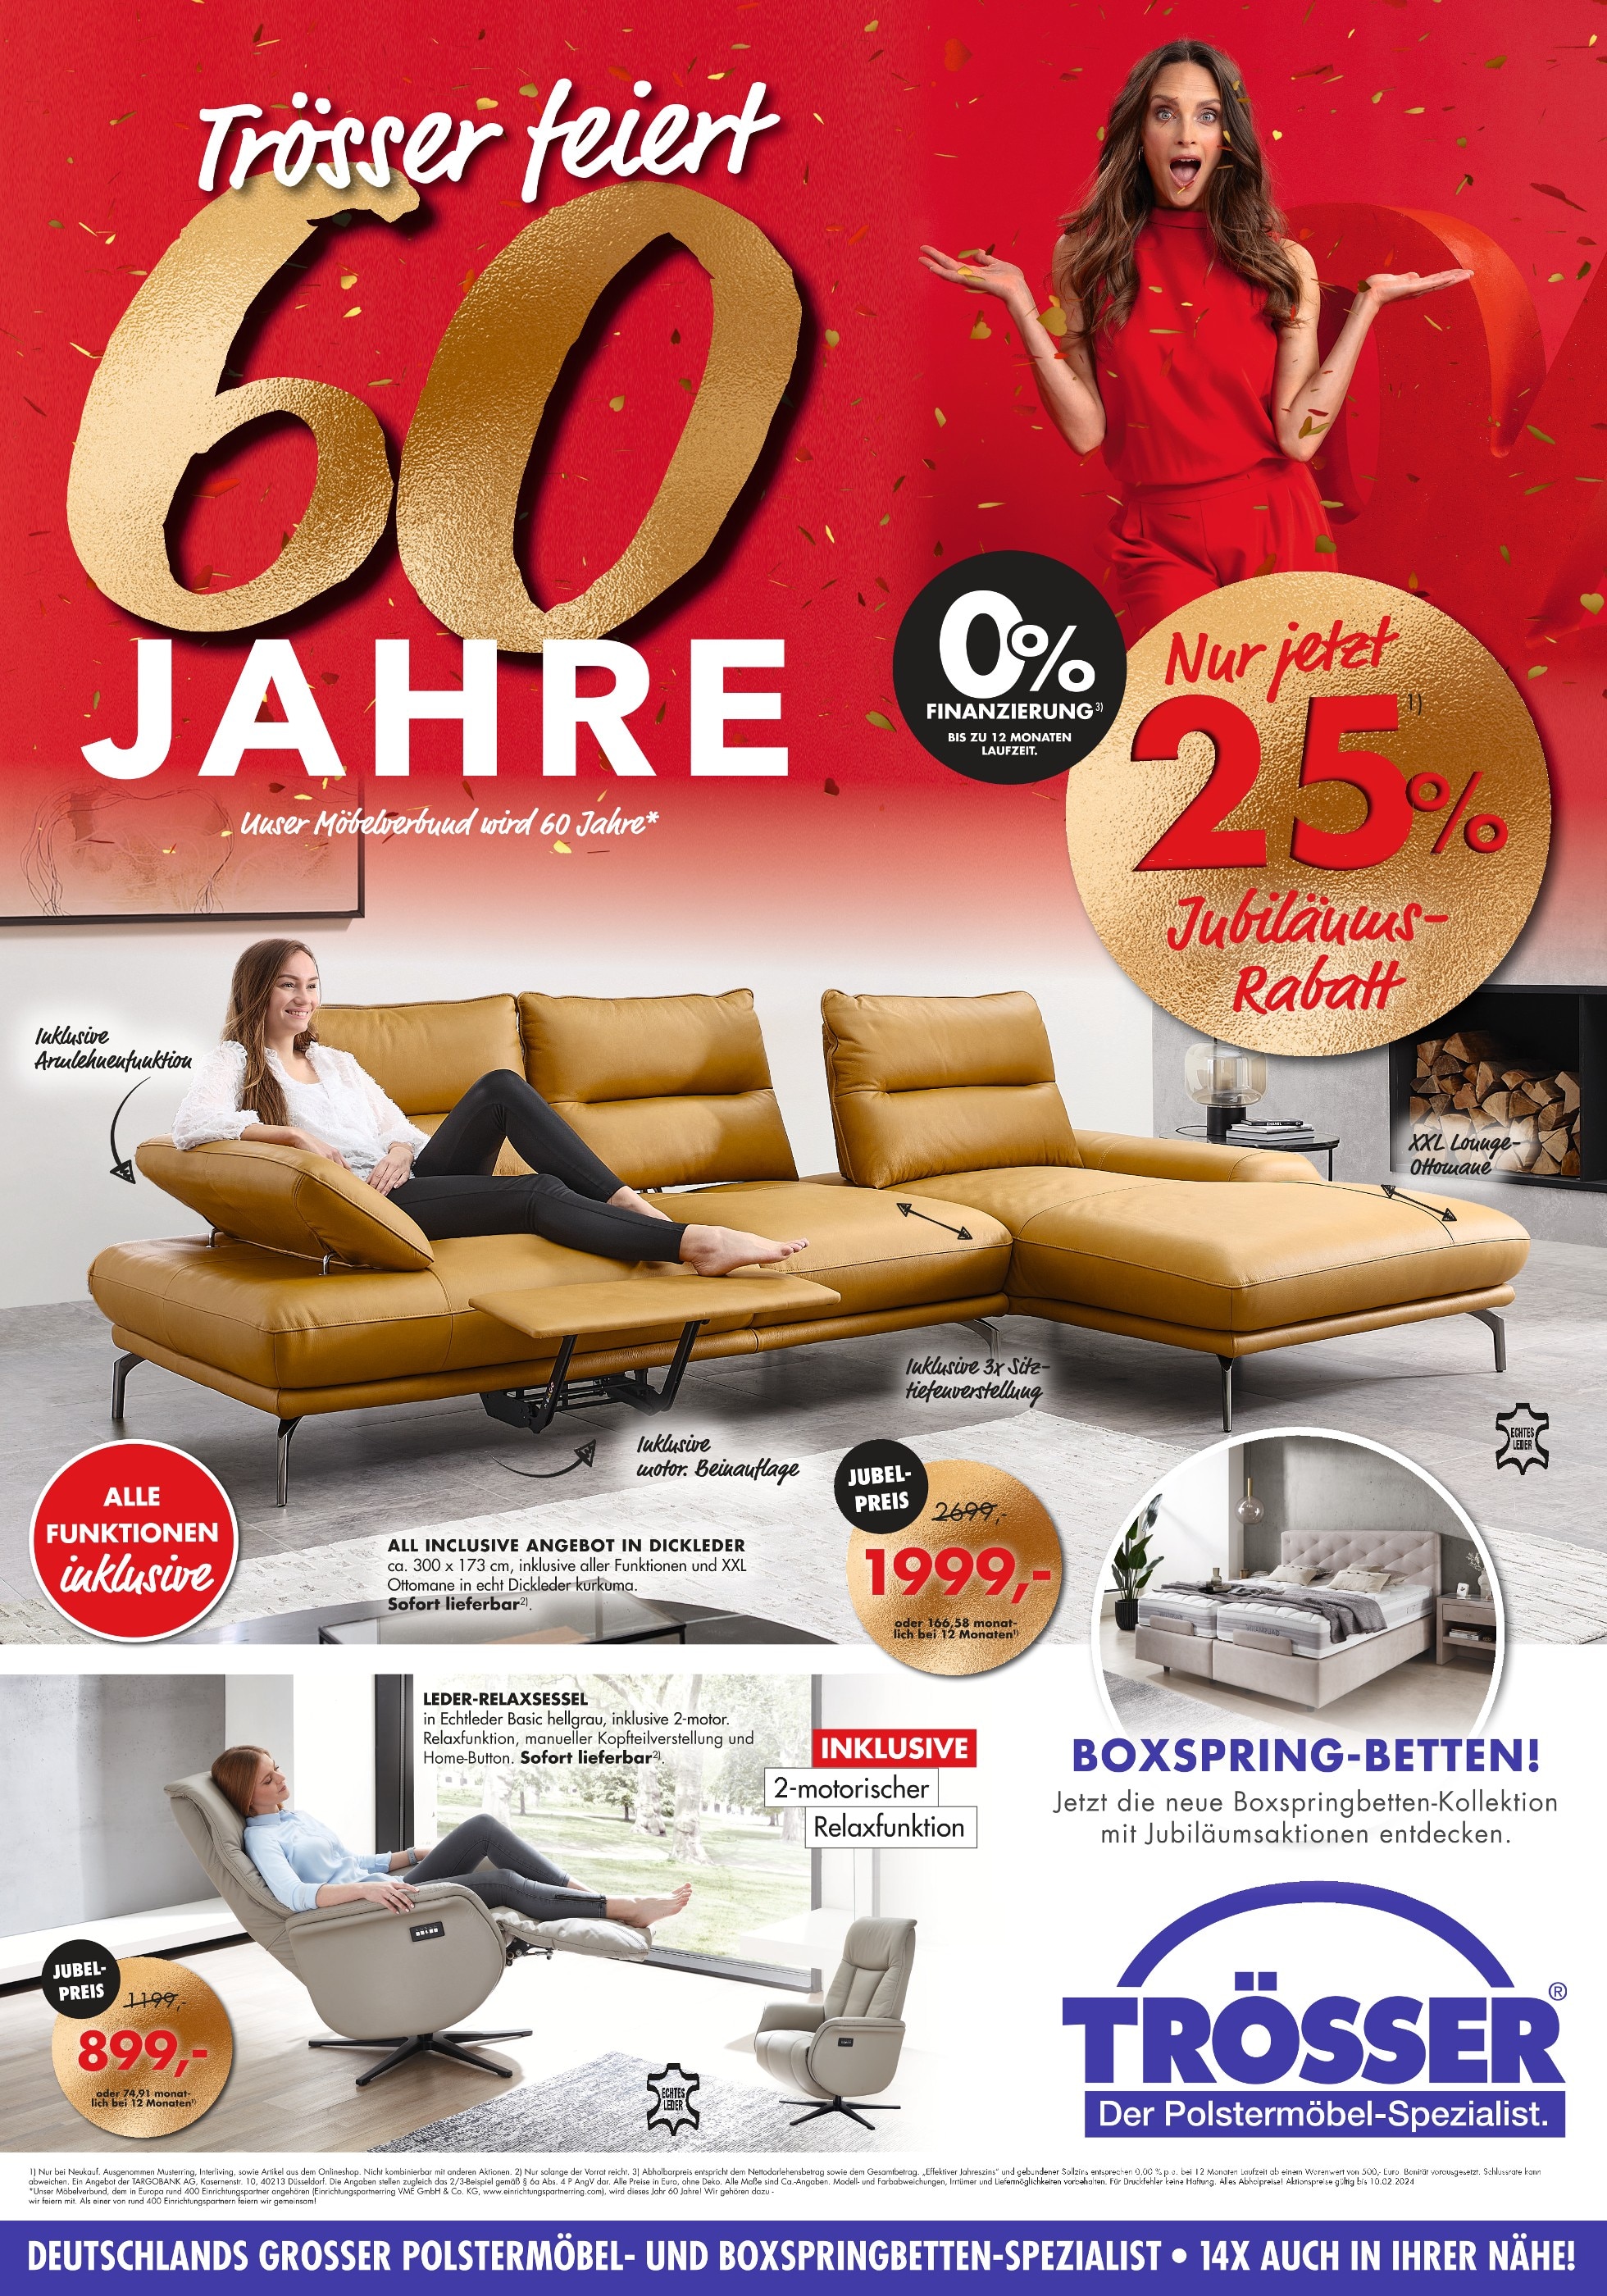 Handtuchhalter Angebote in Köln - jetzt günstig kaufen! 🔥 | Küche, ab 25.01.